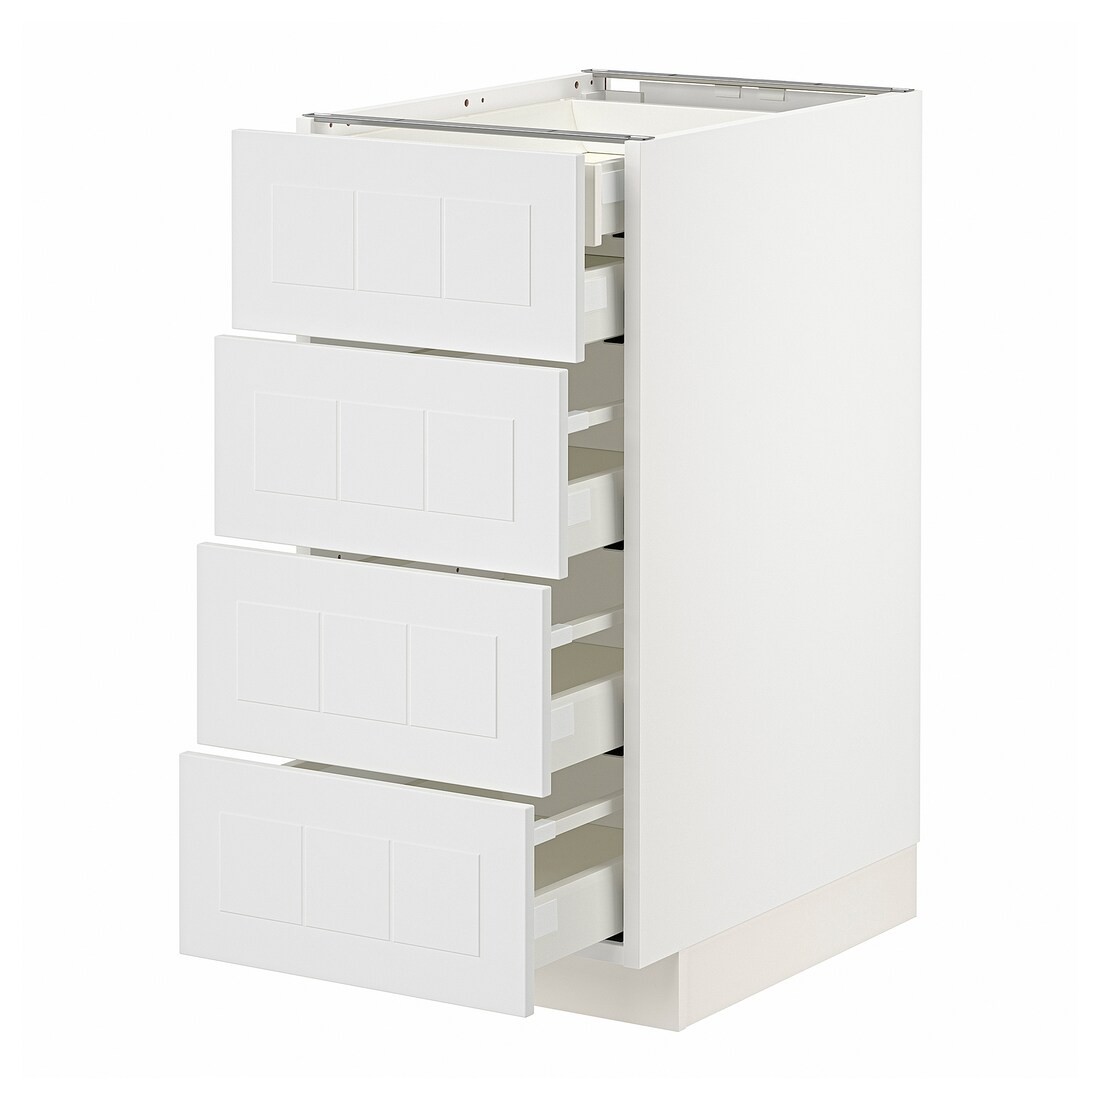 IKEA METOD МЕТОД / MAXIMERA МАКСИМЕРА Напольный шкаф с ящиками, белый / Stensund белый, 40x60 см 89409463 894.094.63